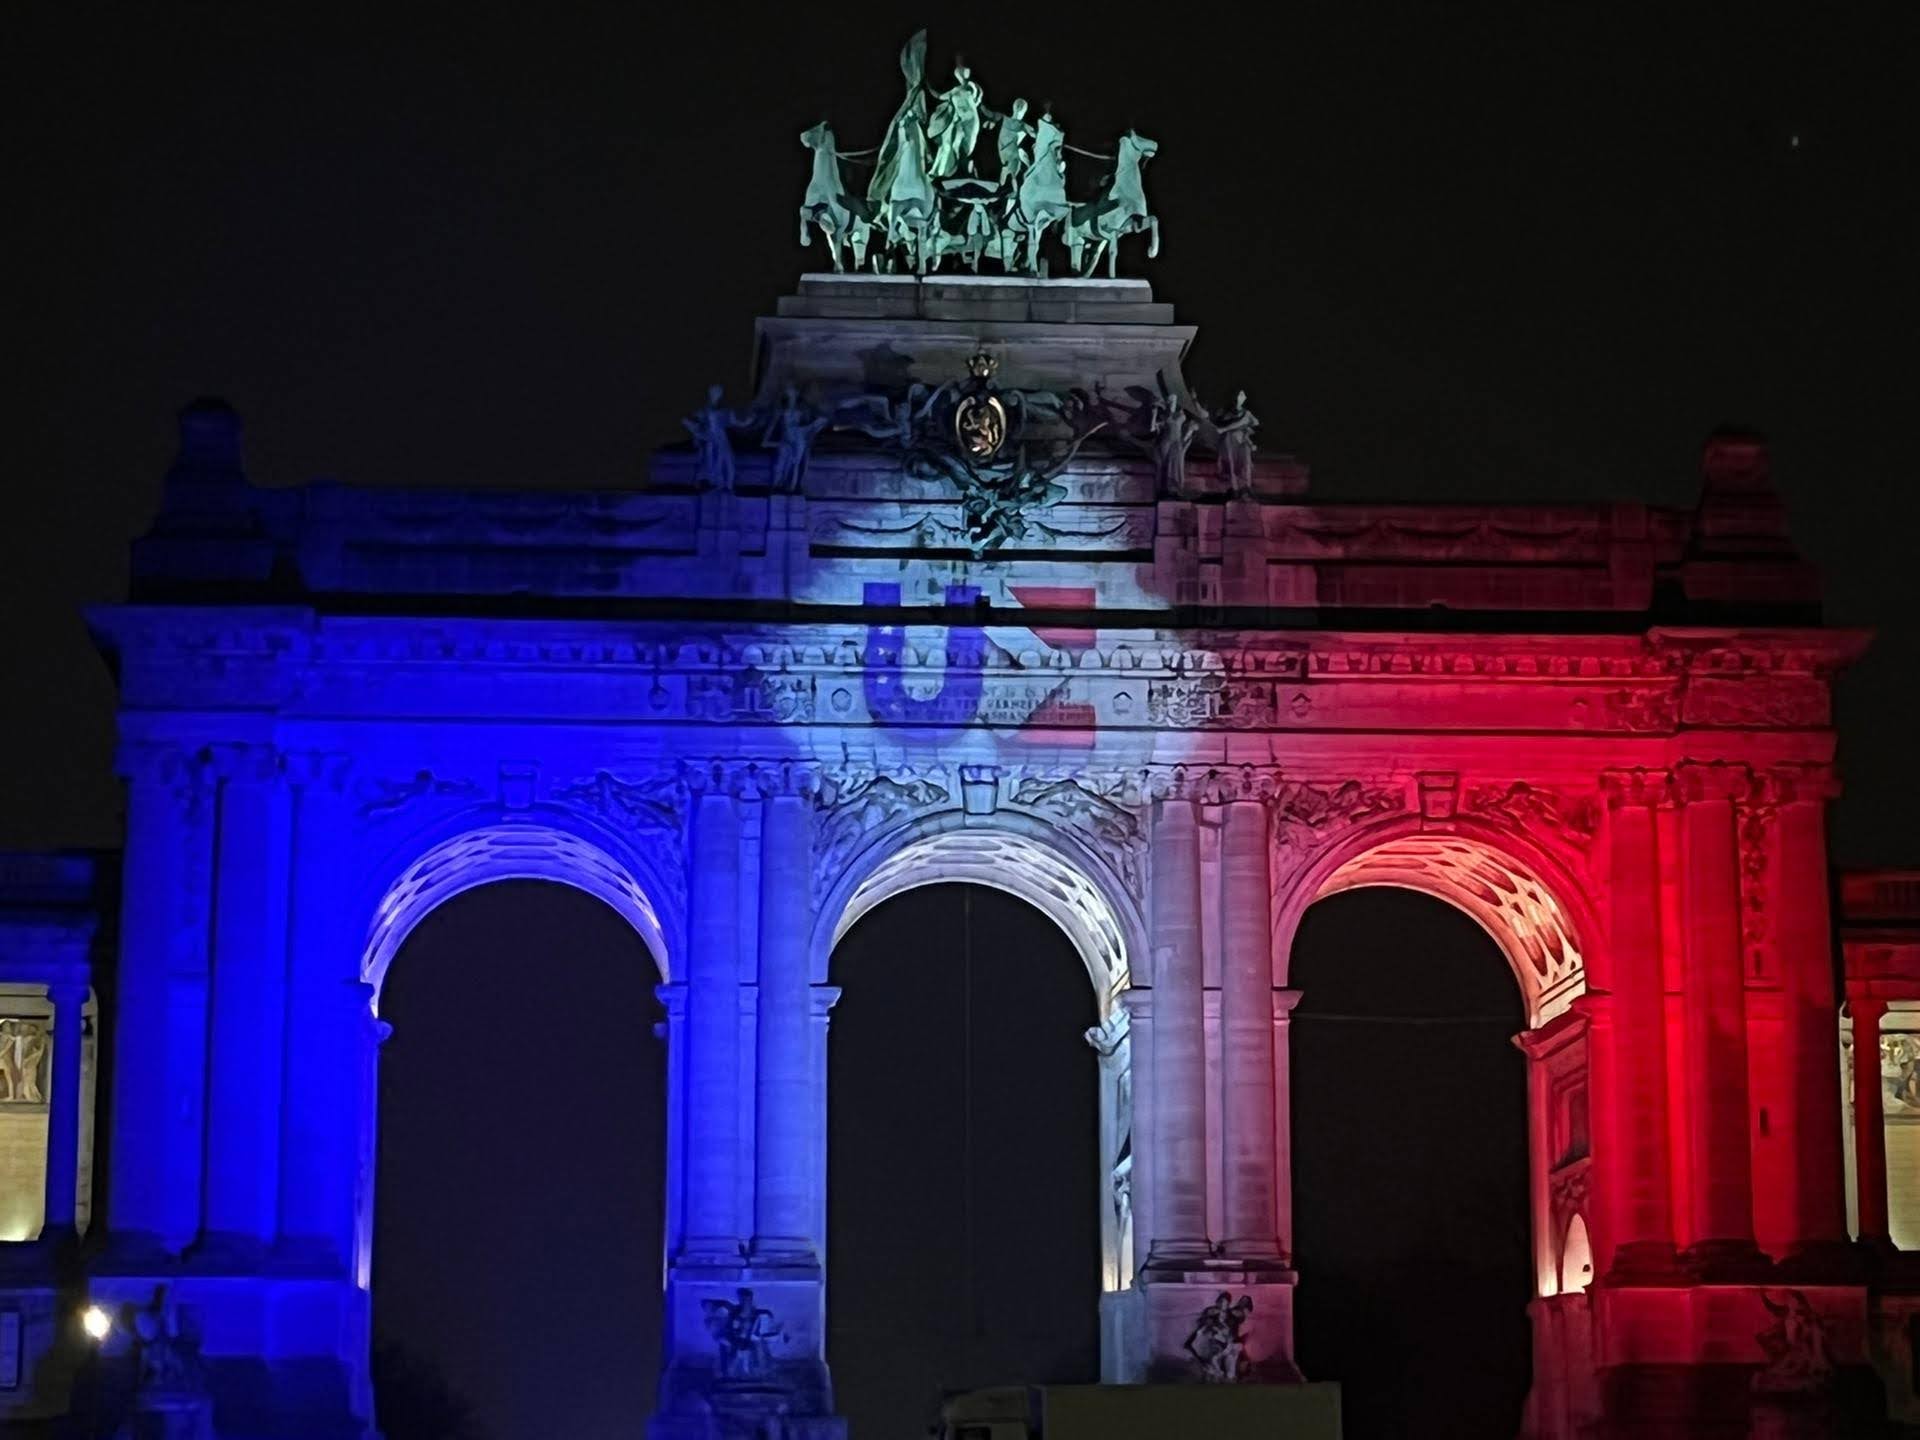 Ein Torbogen beleuchtet in den Farben der französischen Nationalflagge